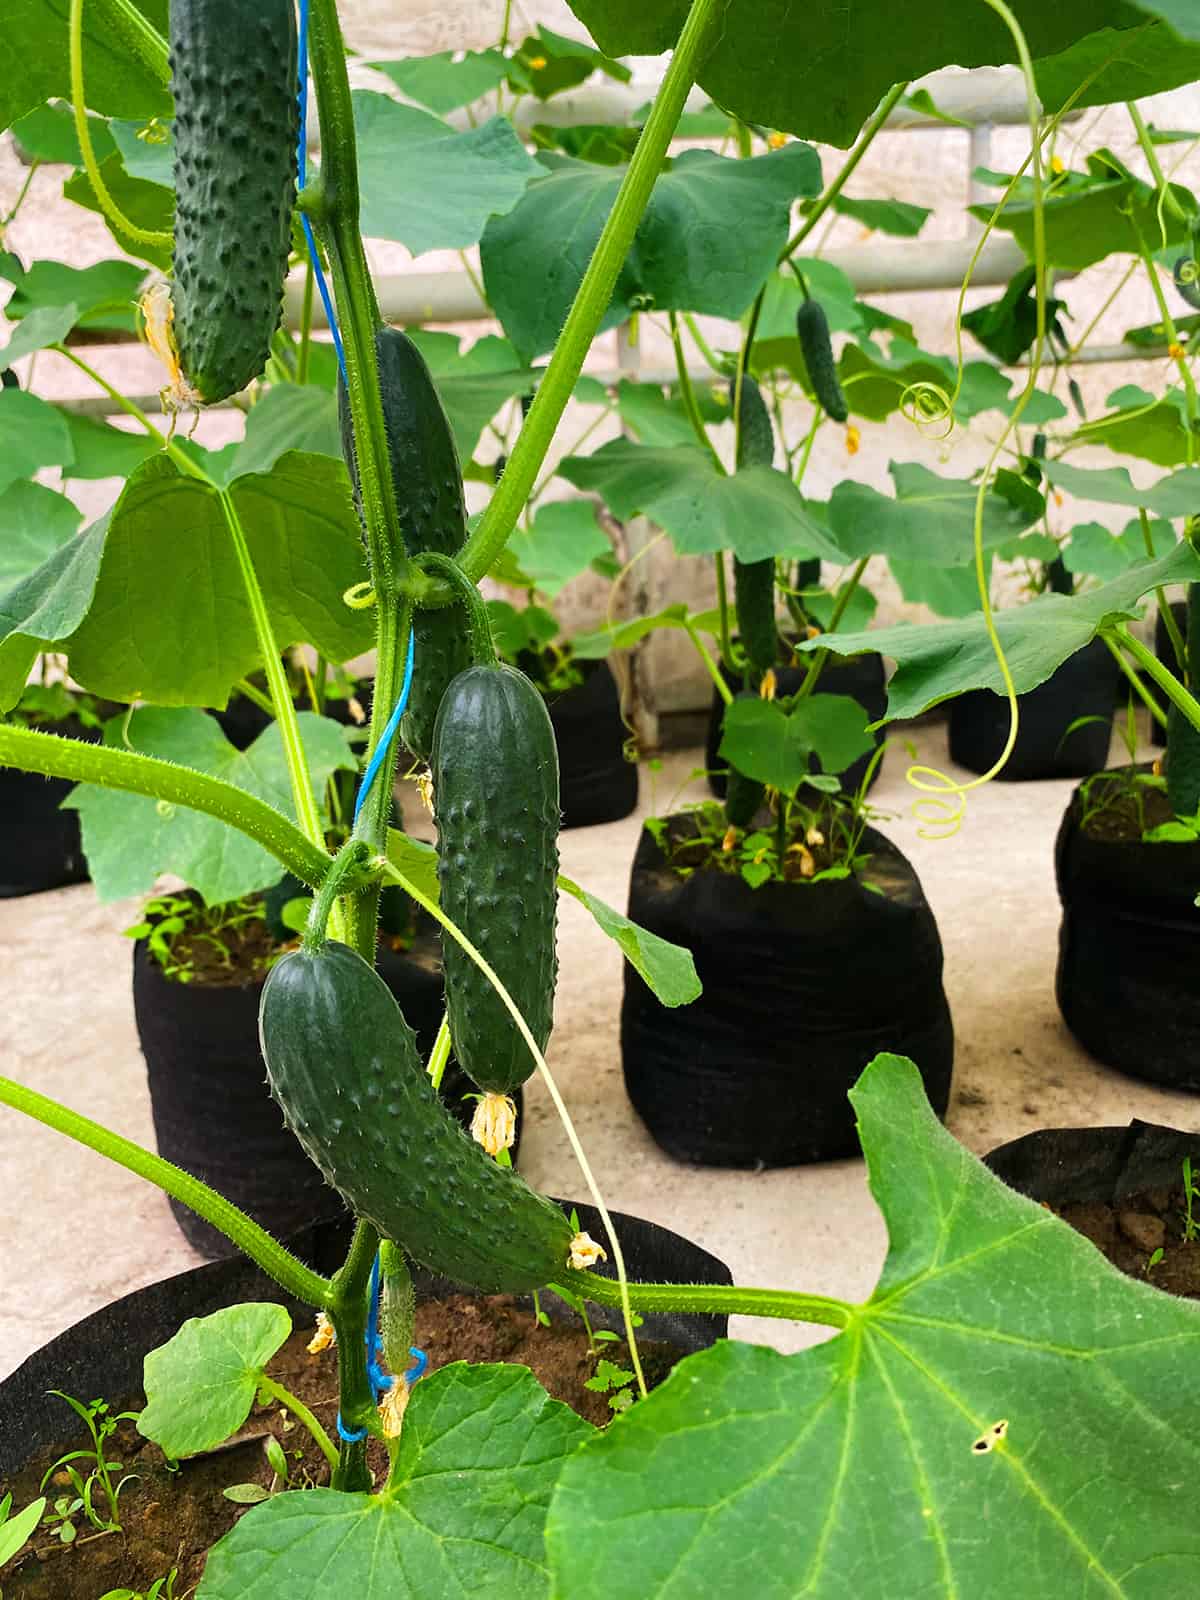 Can I Reuse Cucumber Grow Bags